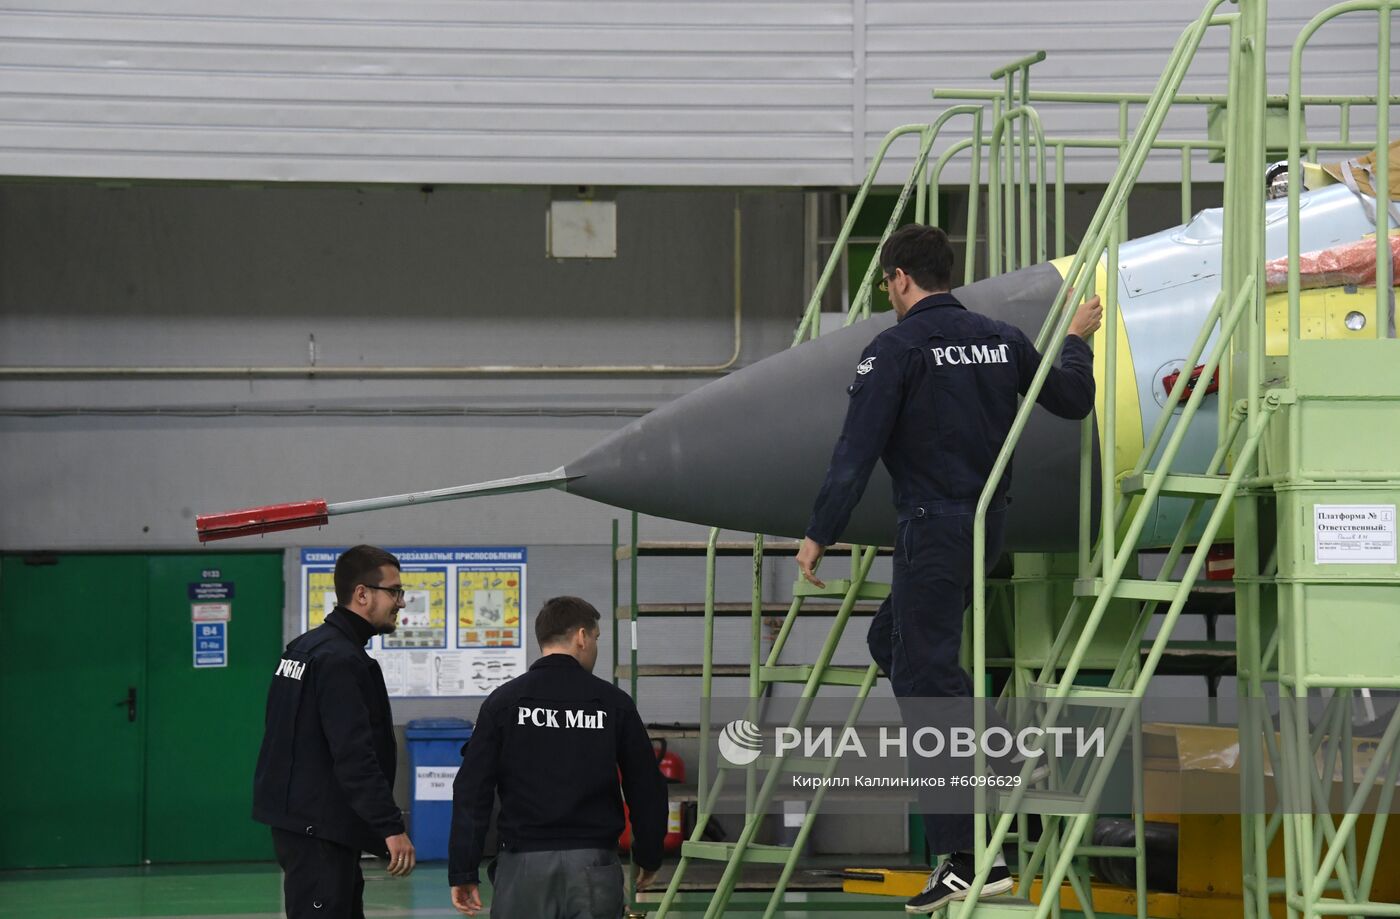 Производство самолетов "МиГ" на Луховицком авиационном заводе 